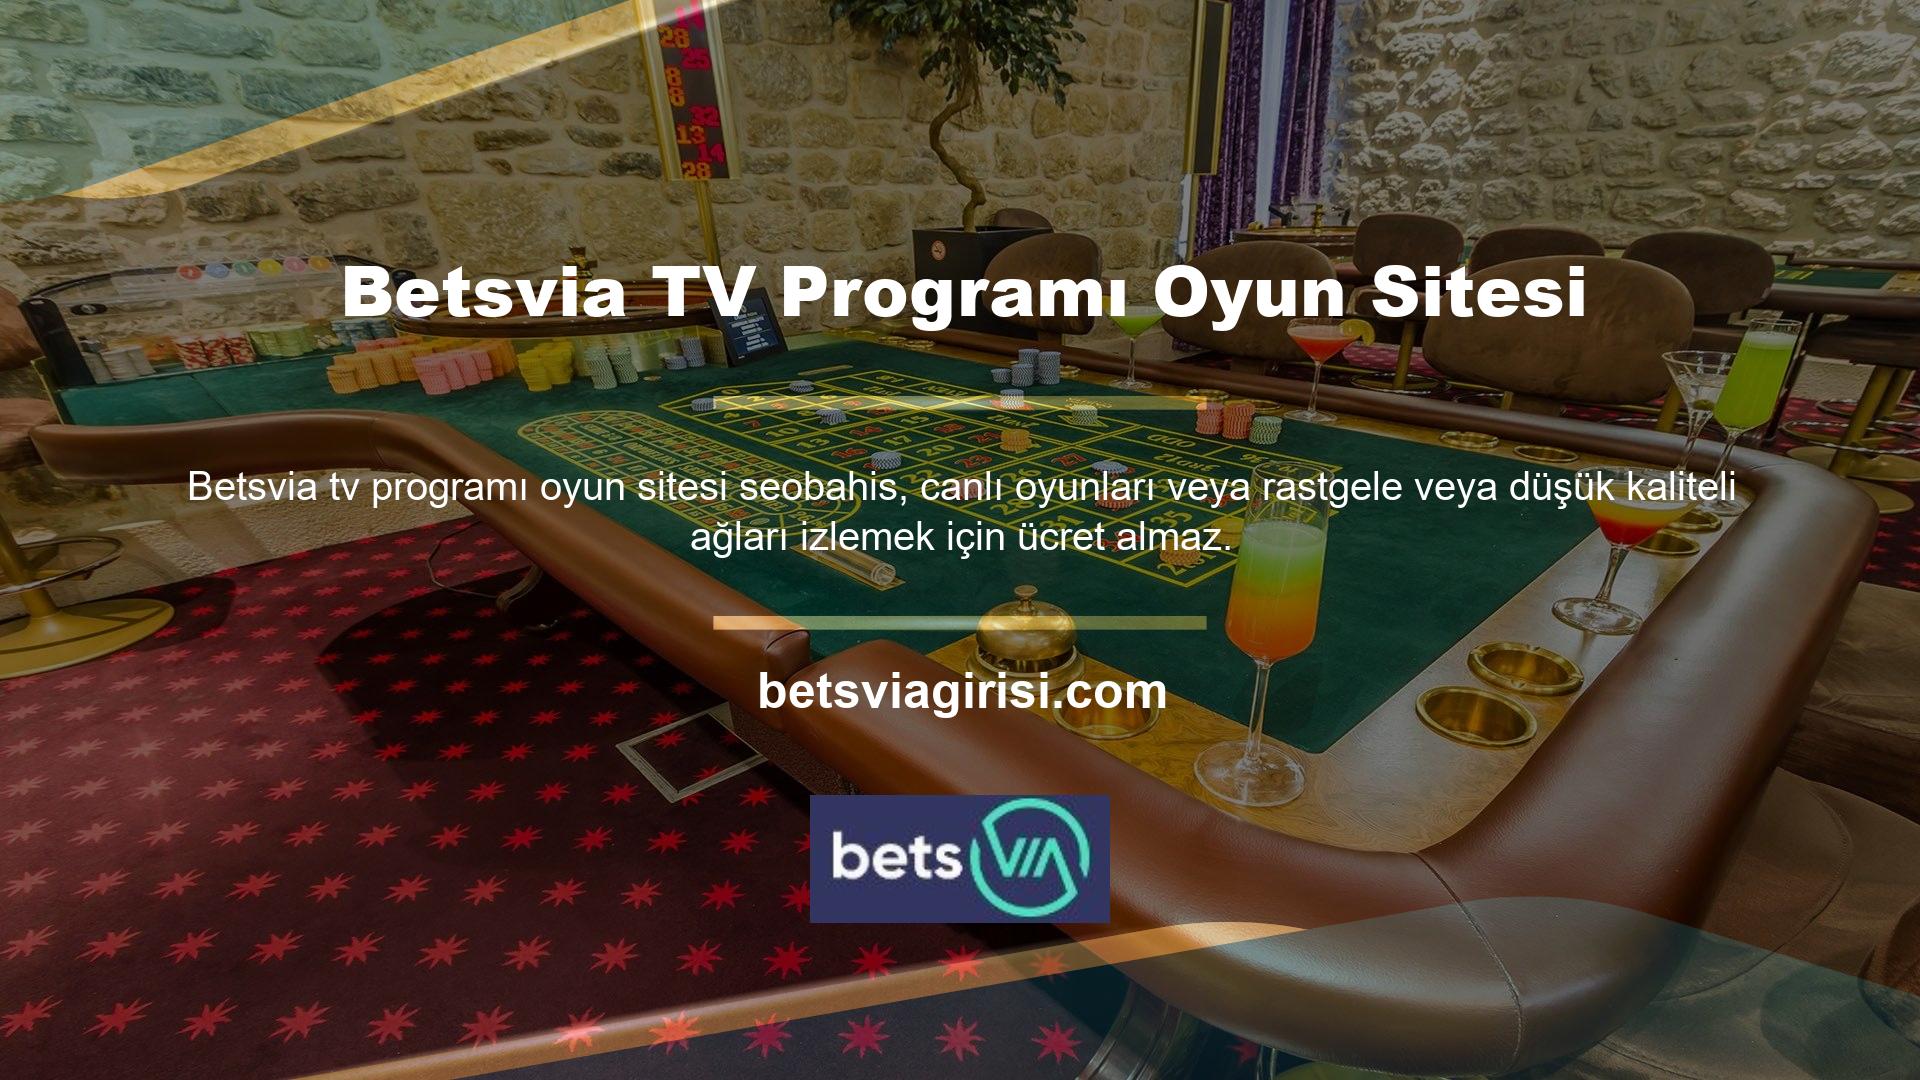 En istikrarlı bahis pazarlarından biri Betsvia TV Adresi oyun sitesidir